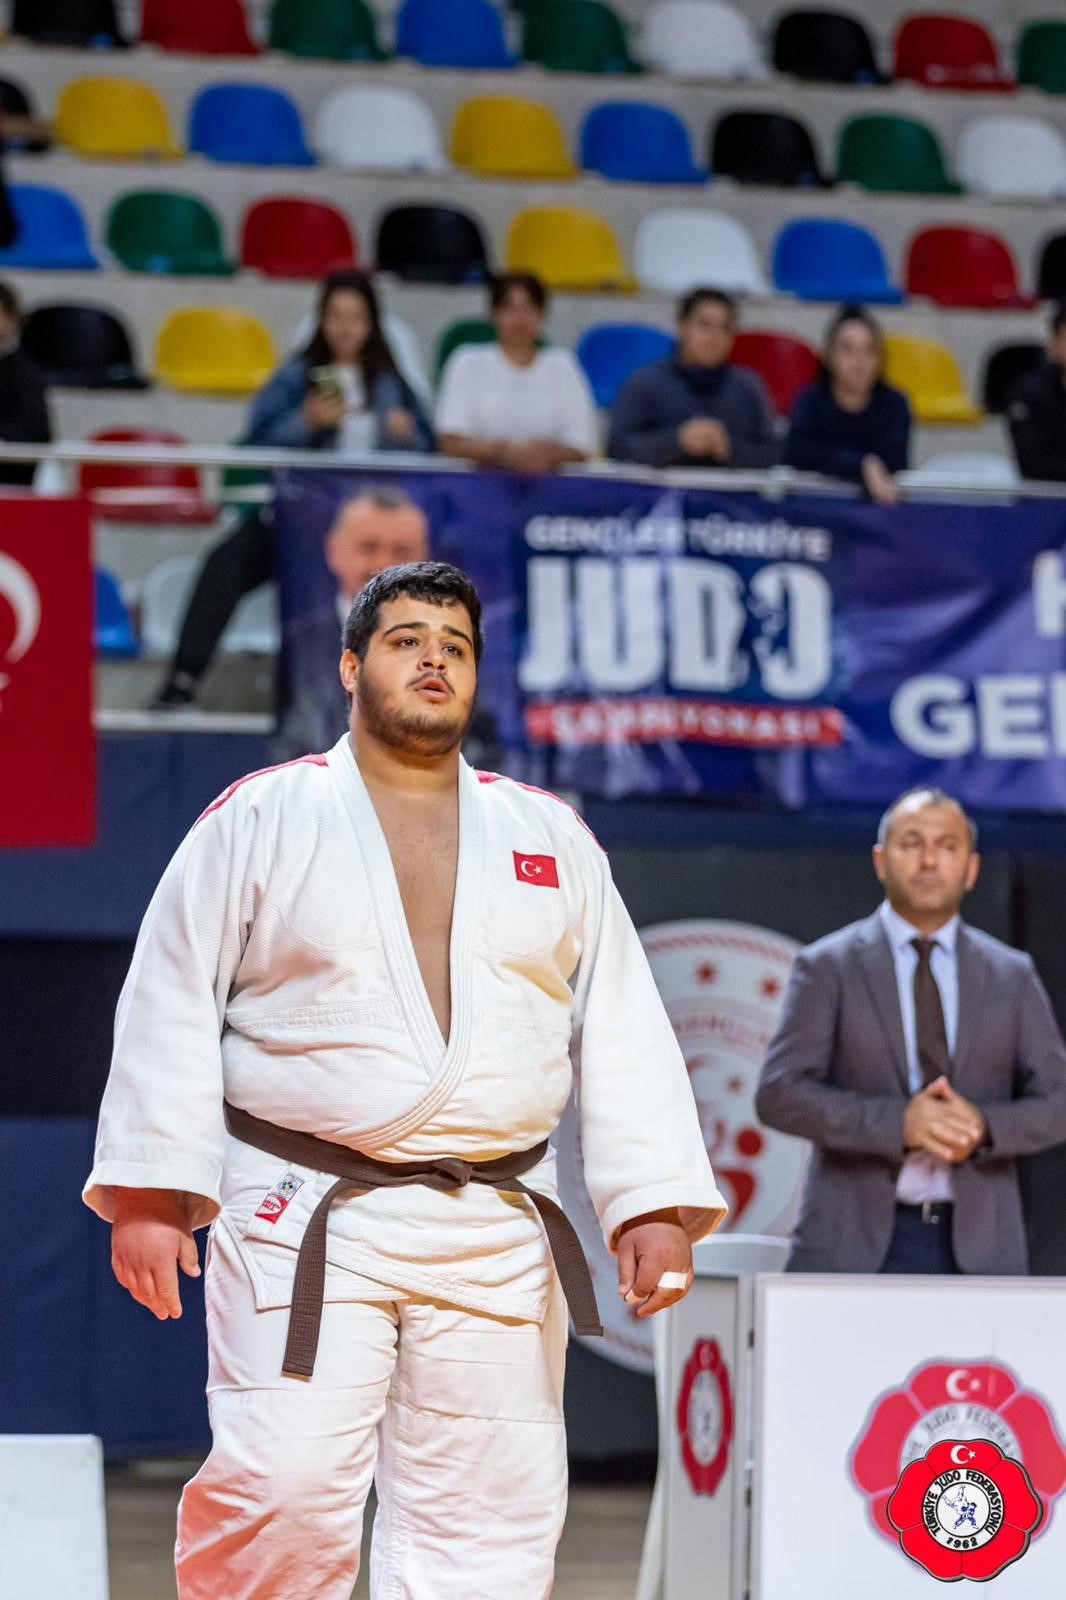 Manisalı Milli Judocu Türkiye Ikincisi Oldu (3)